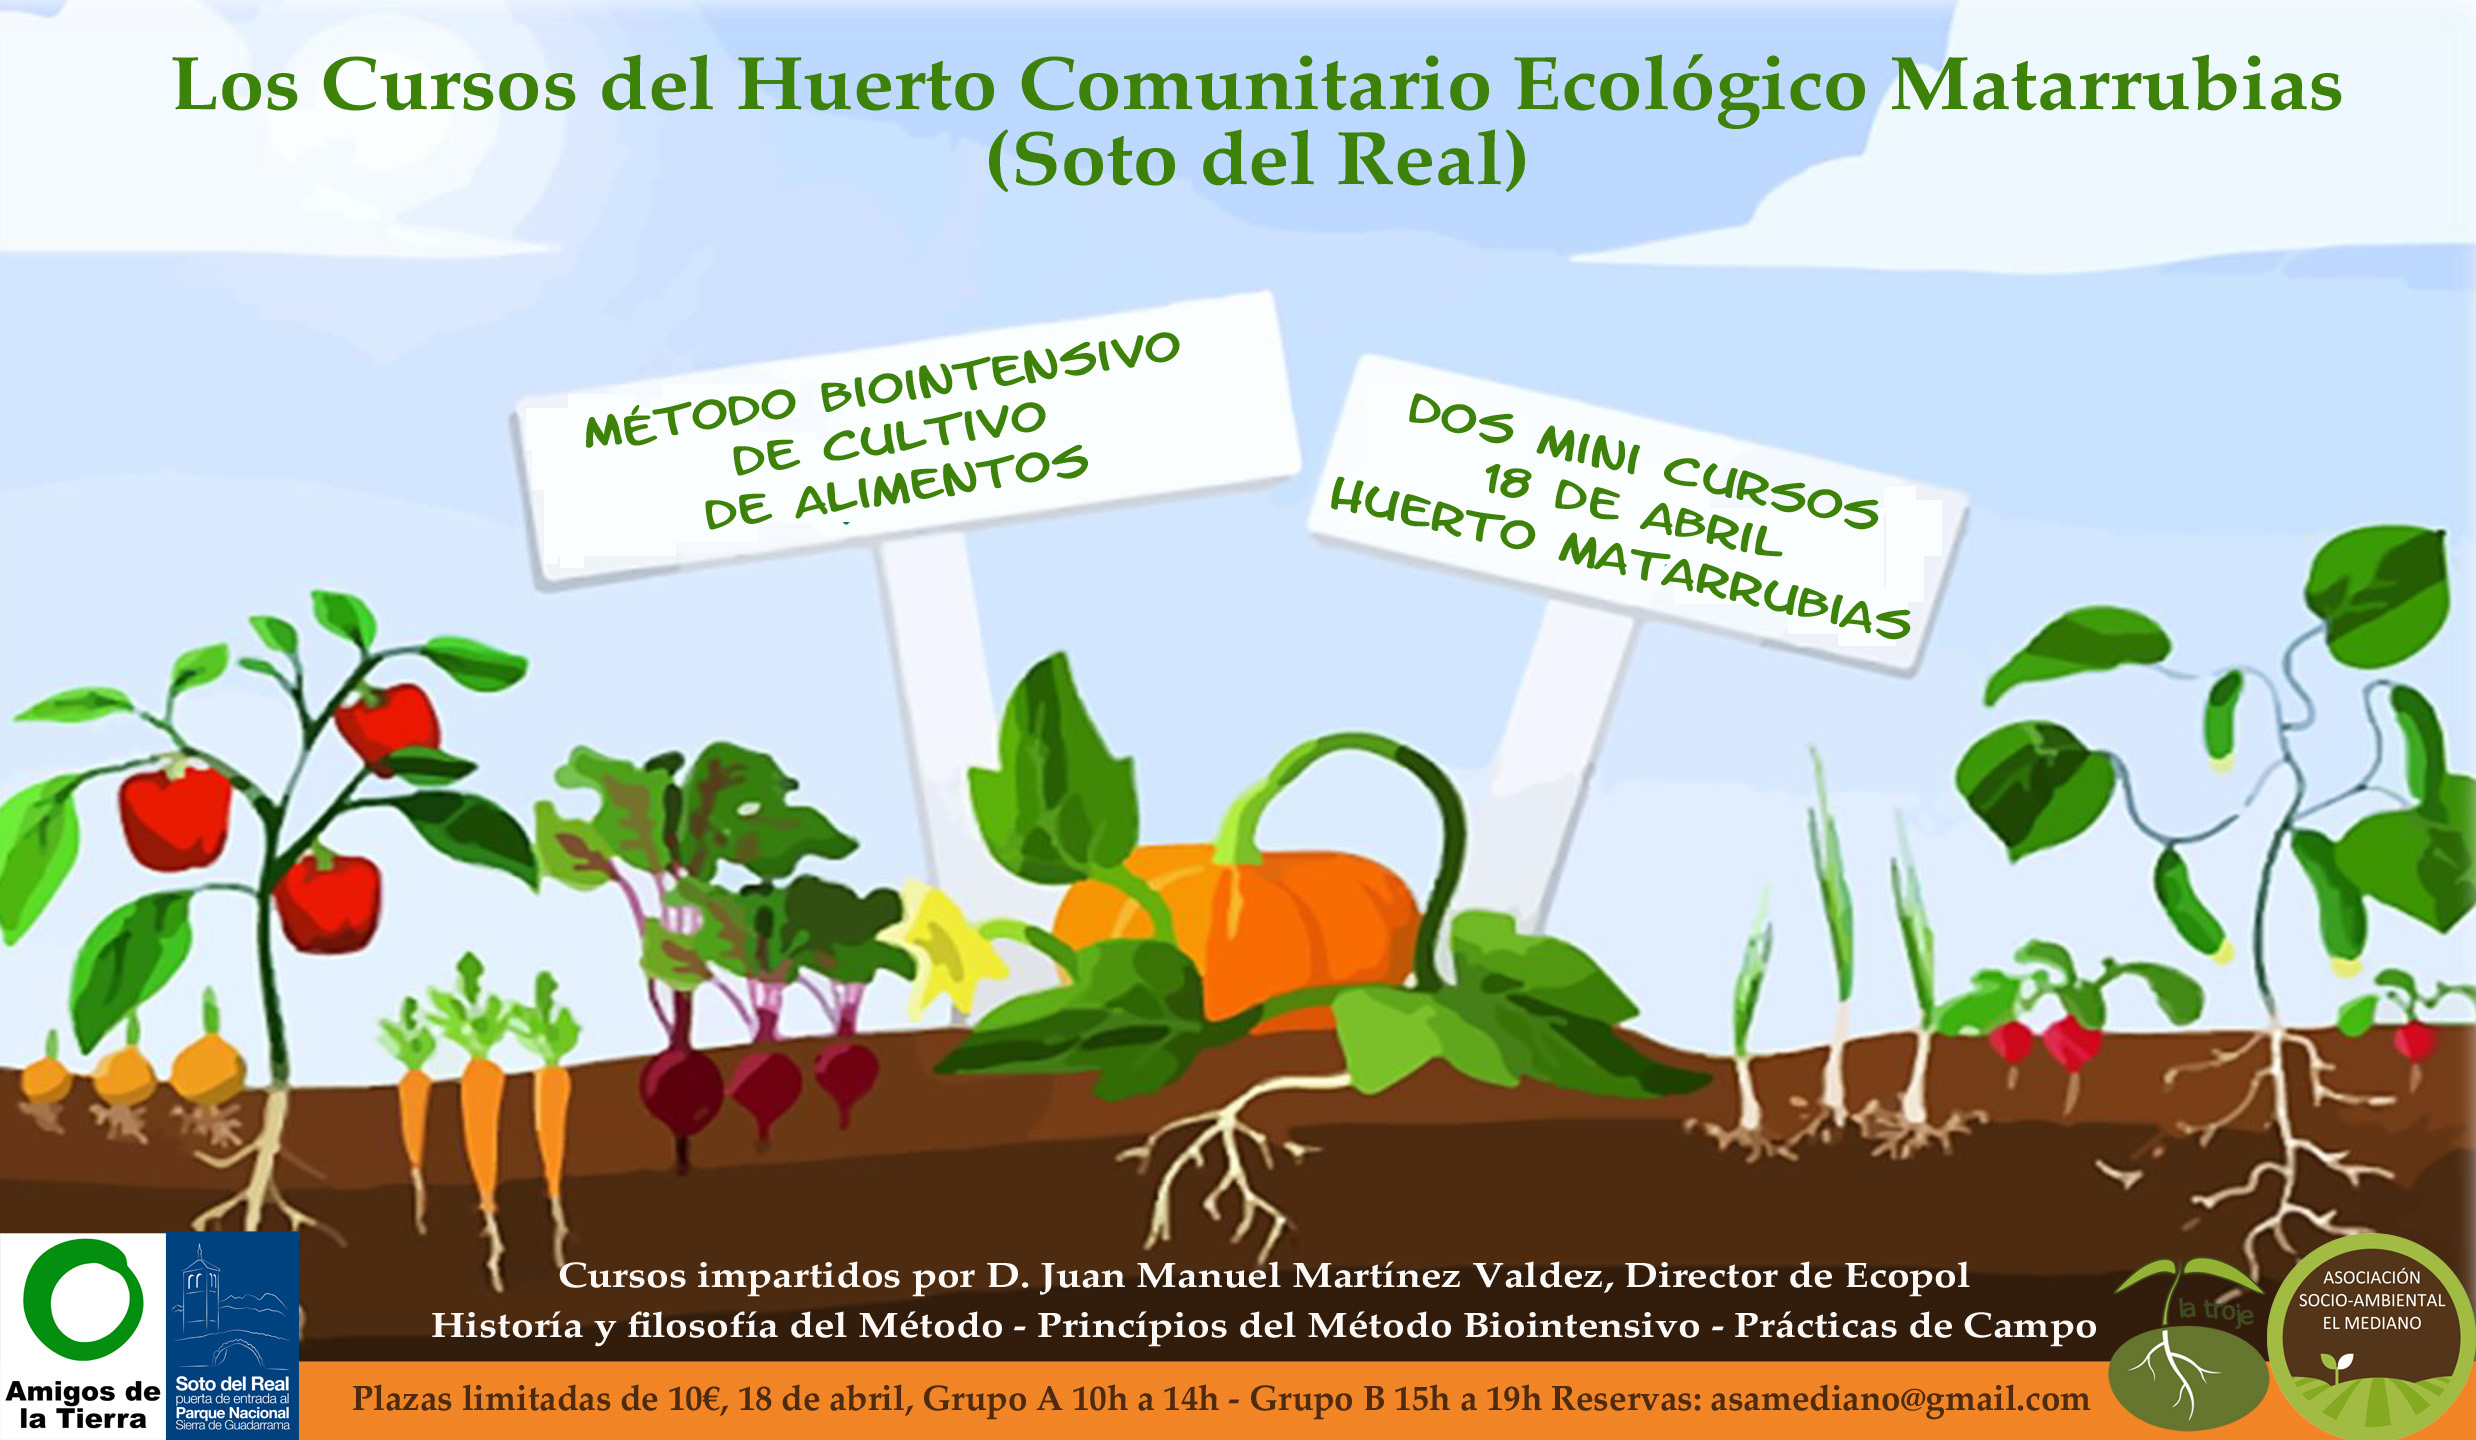 Ir a Madrid: Mini-curso del Método Biointensivo de Cultivo de Alimentos